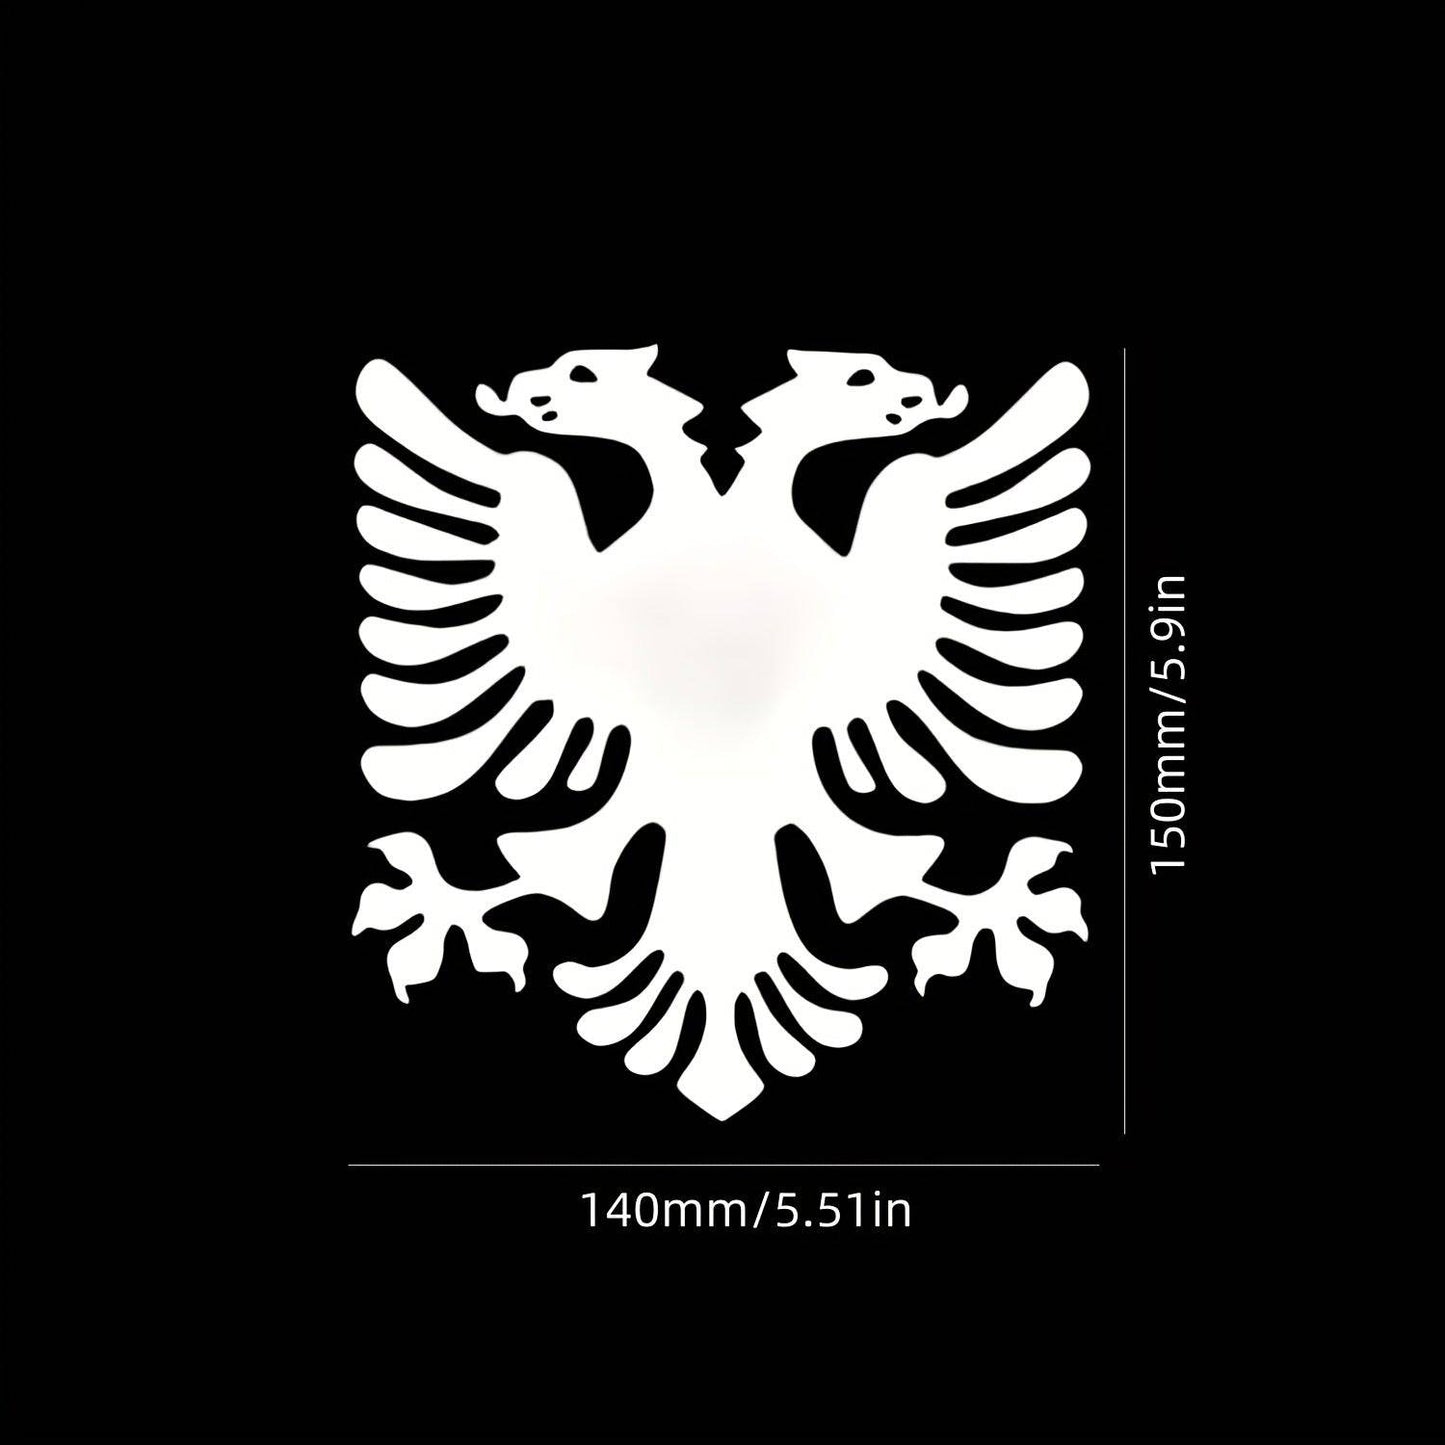 Stolz zeigt sich der Albanische Adler auf Vinyl Aufklebern (Albanien Aufkleber)